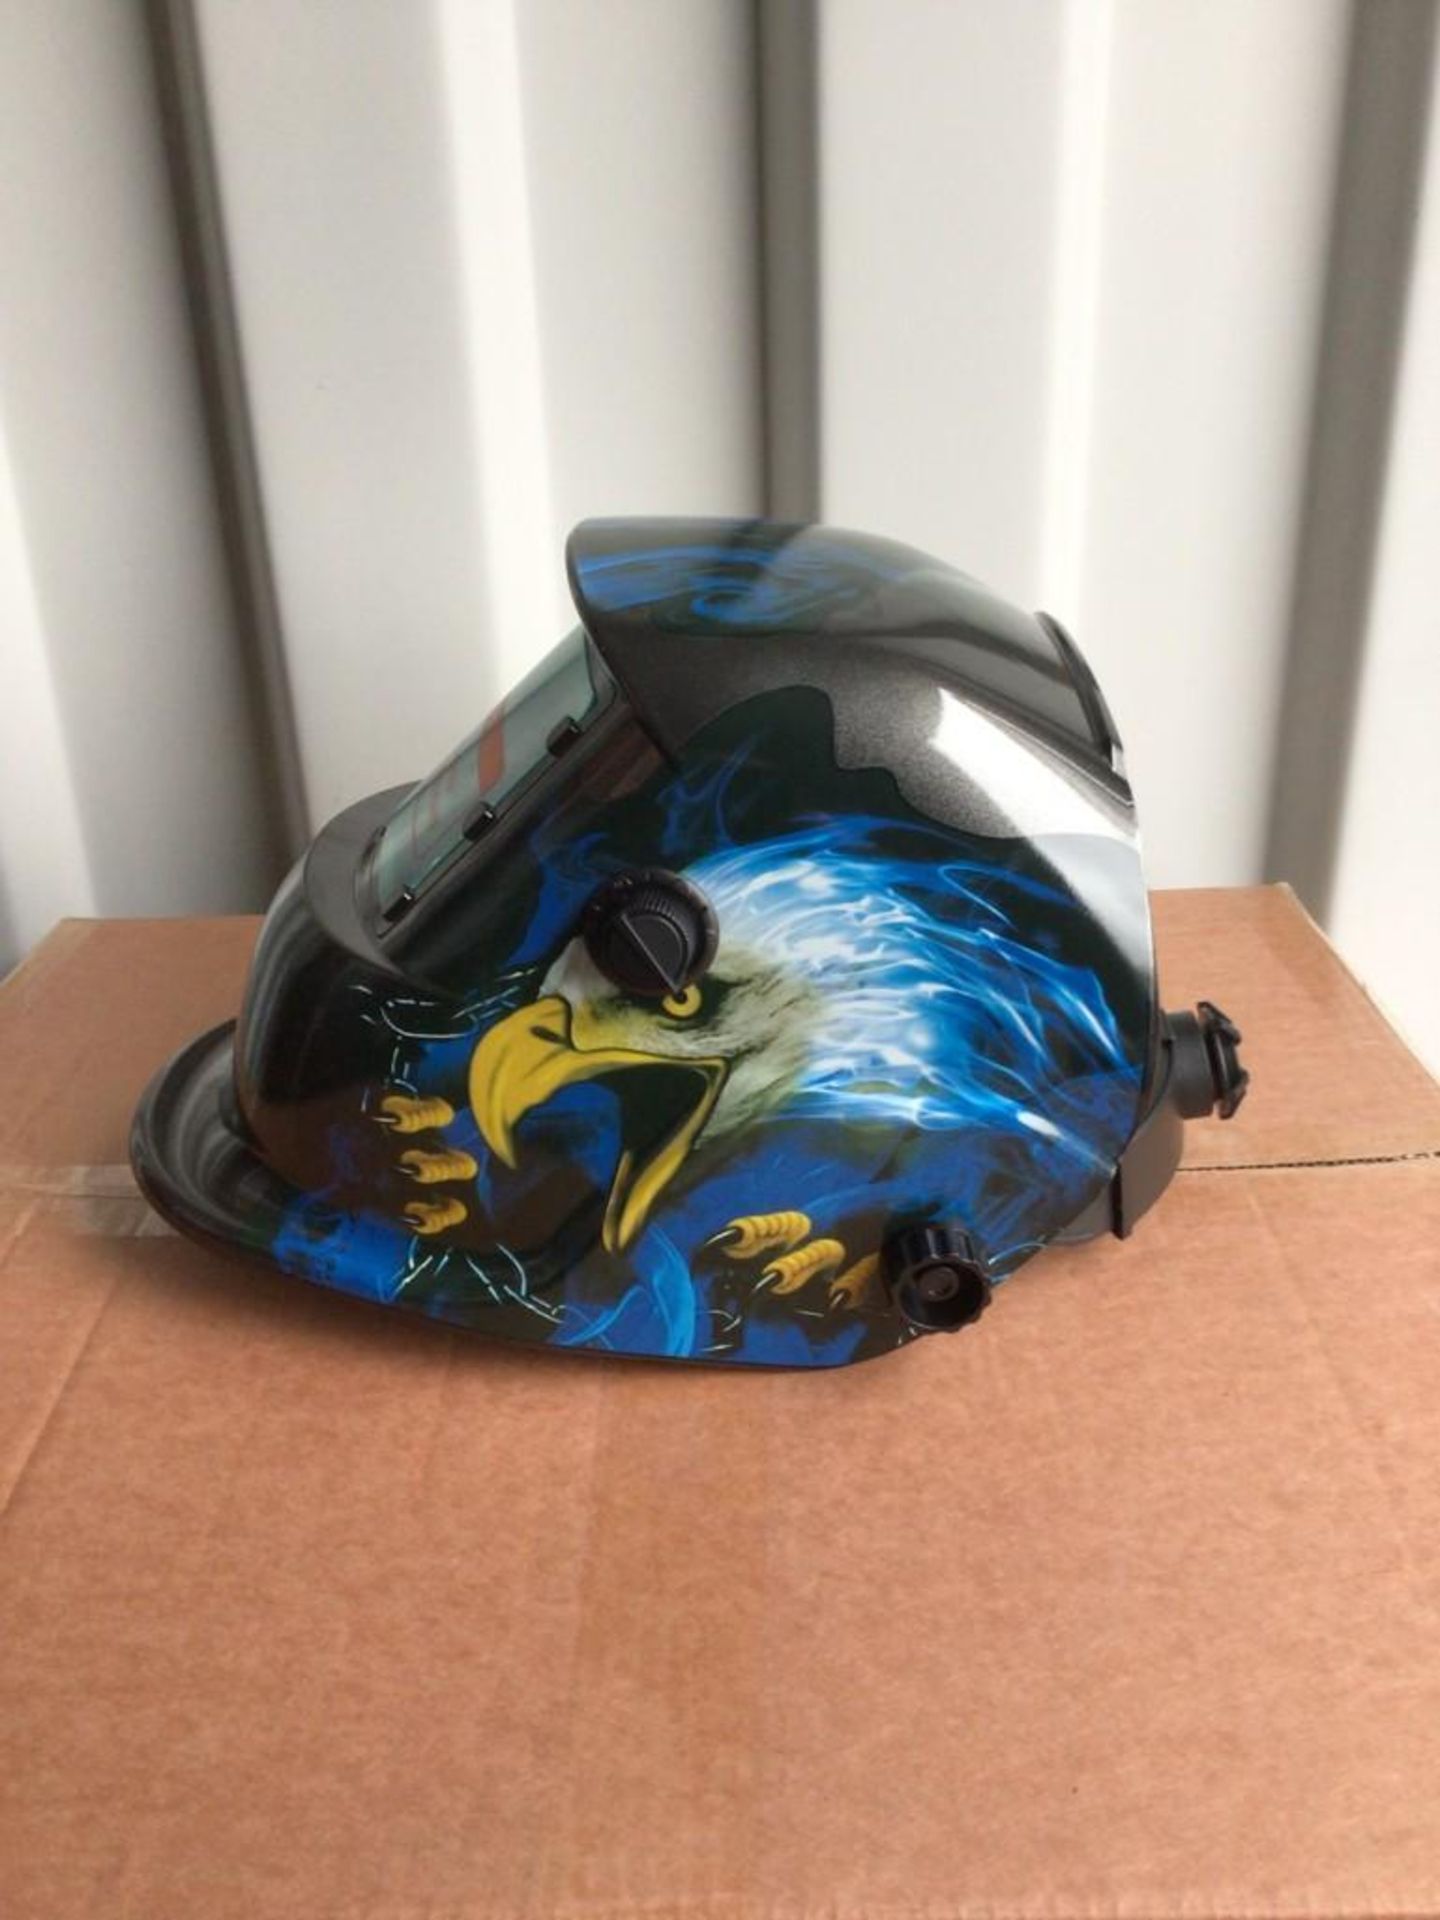 New Auto Darkening Welding Helmet - Image 2 of 7